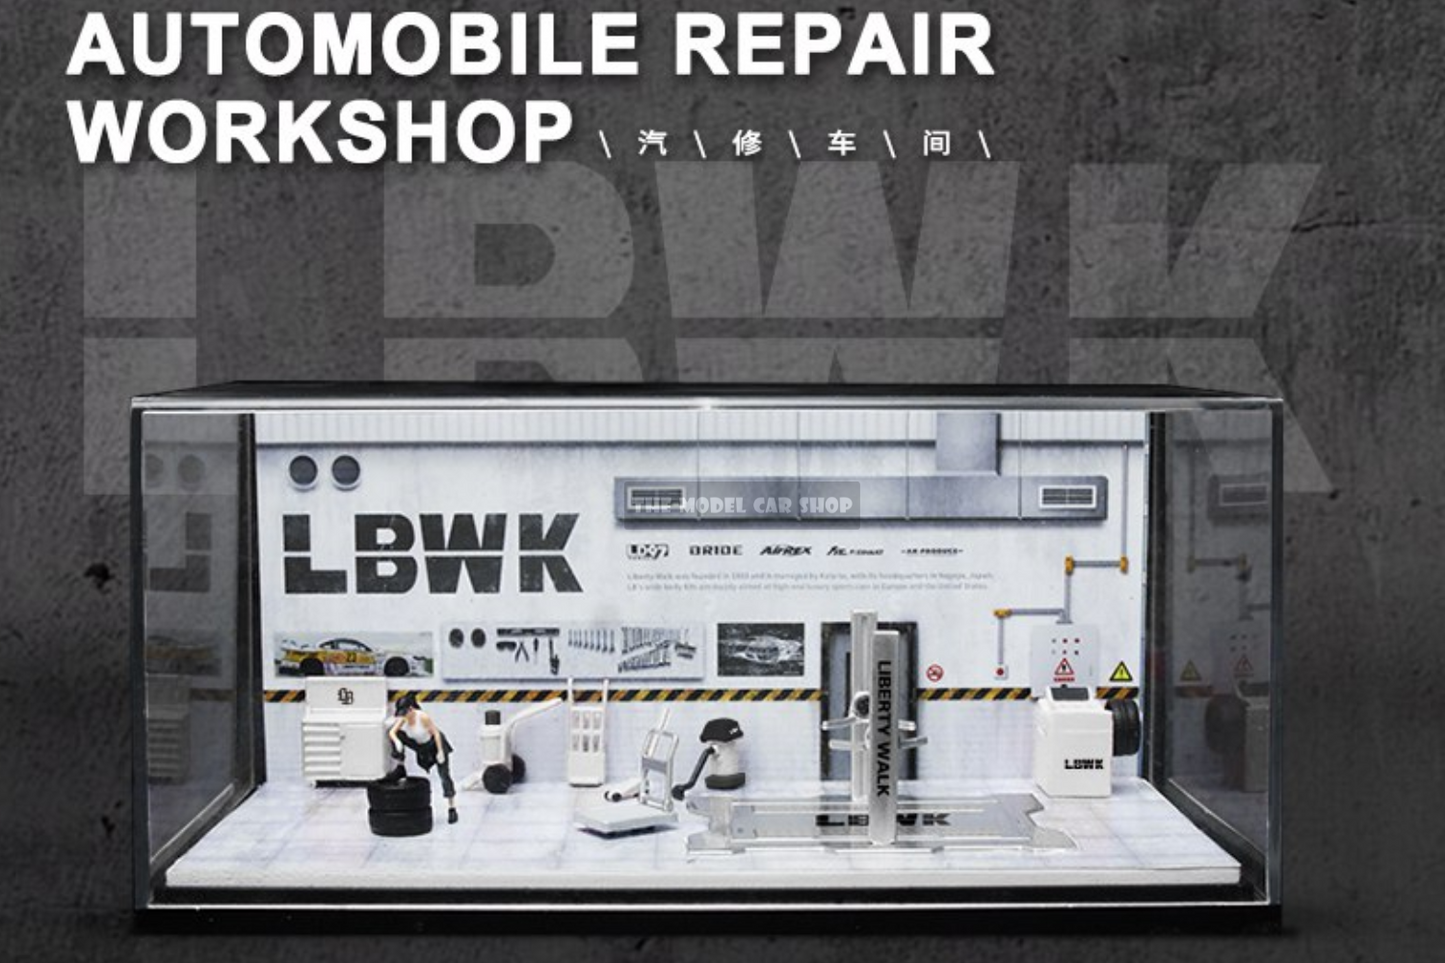 [More Art] Automobile Repair Workshop Diorama